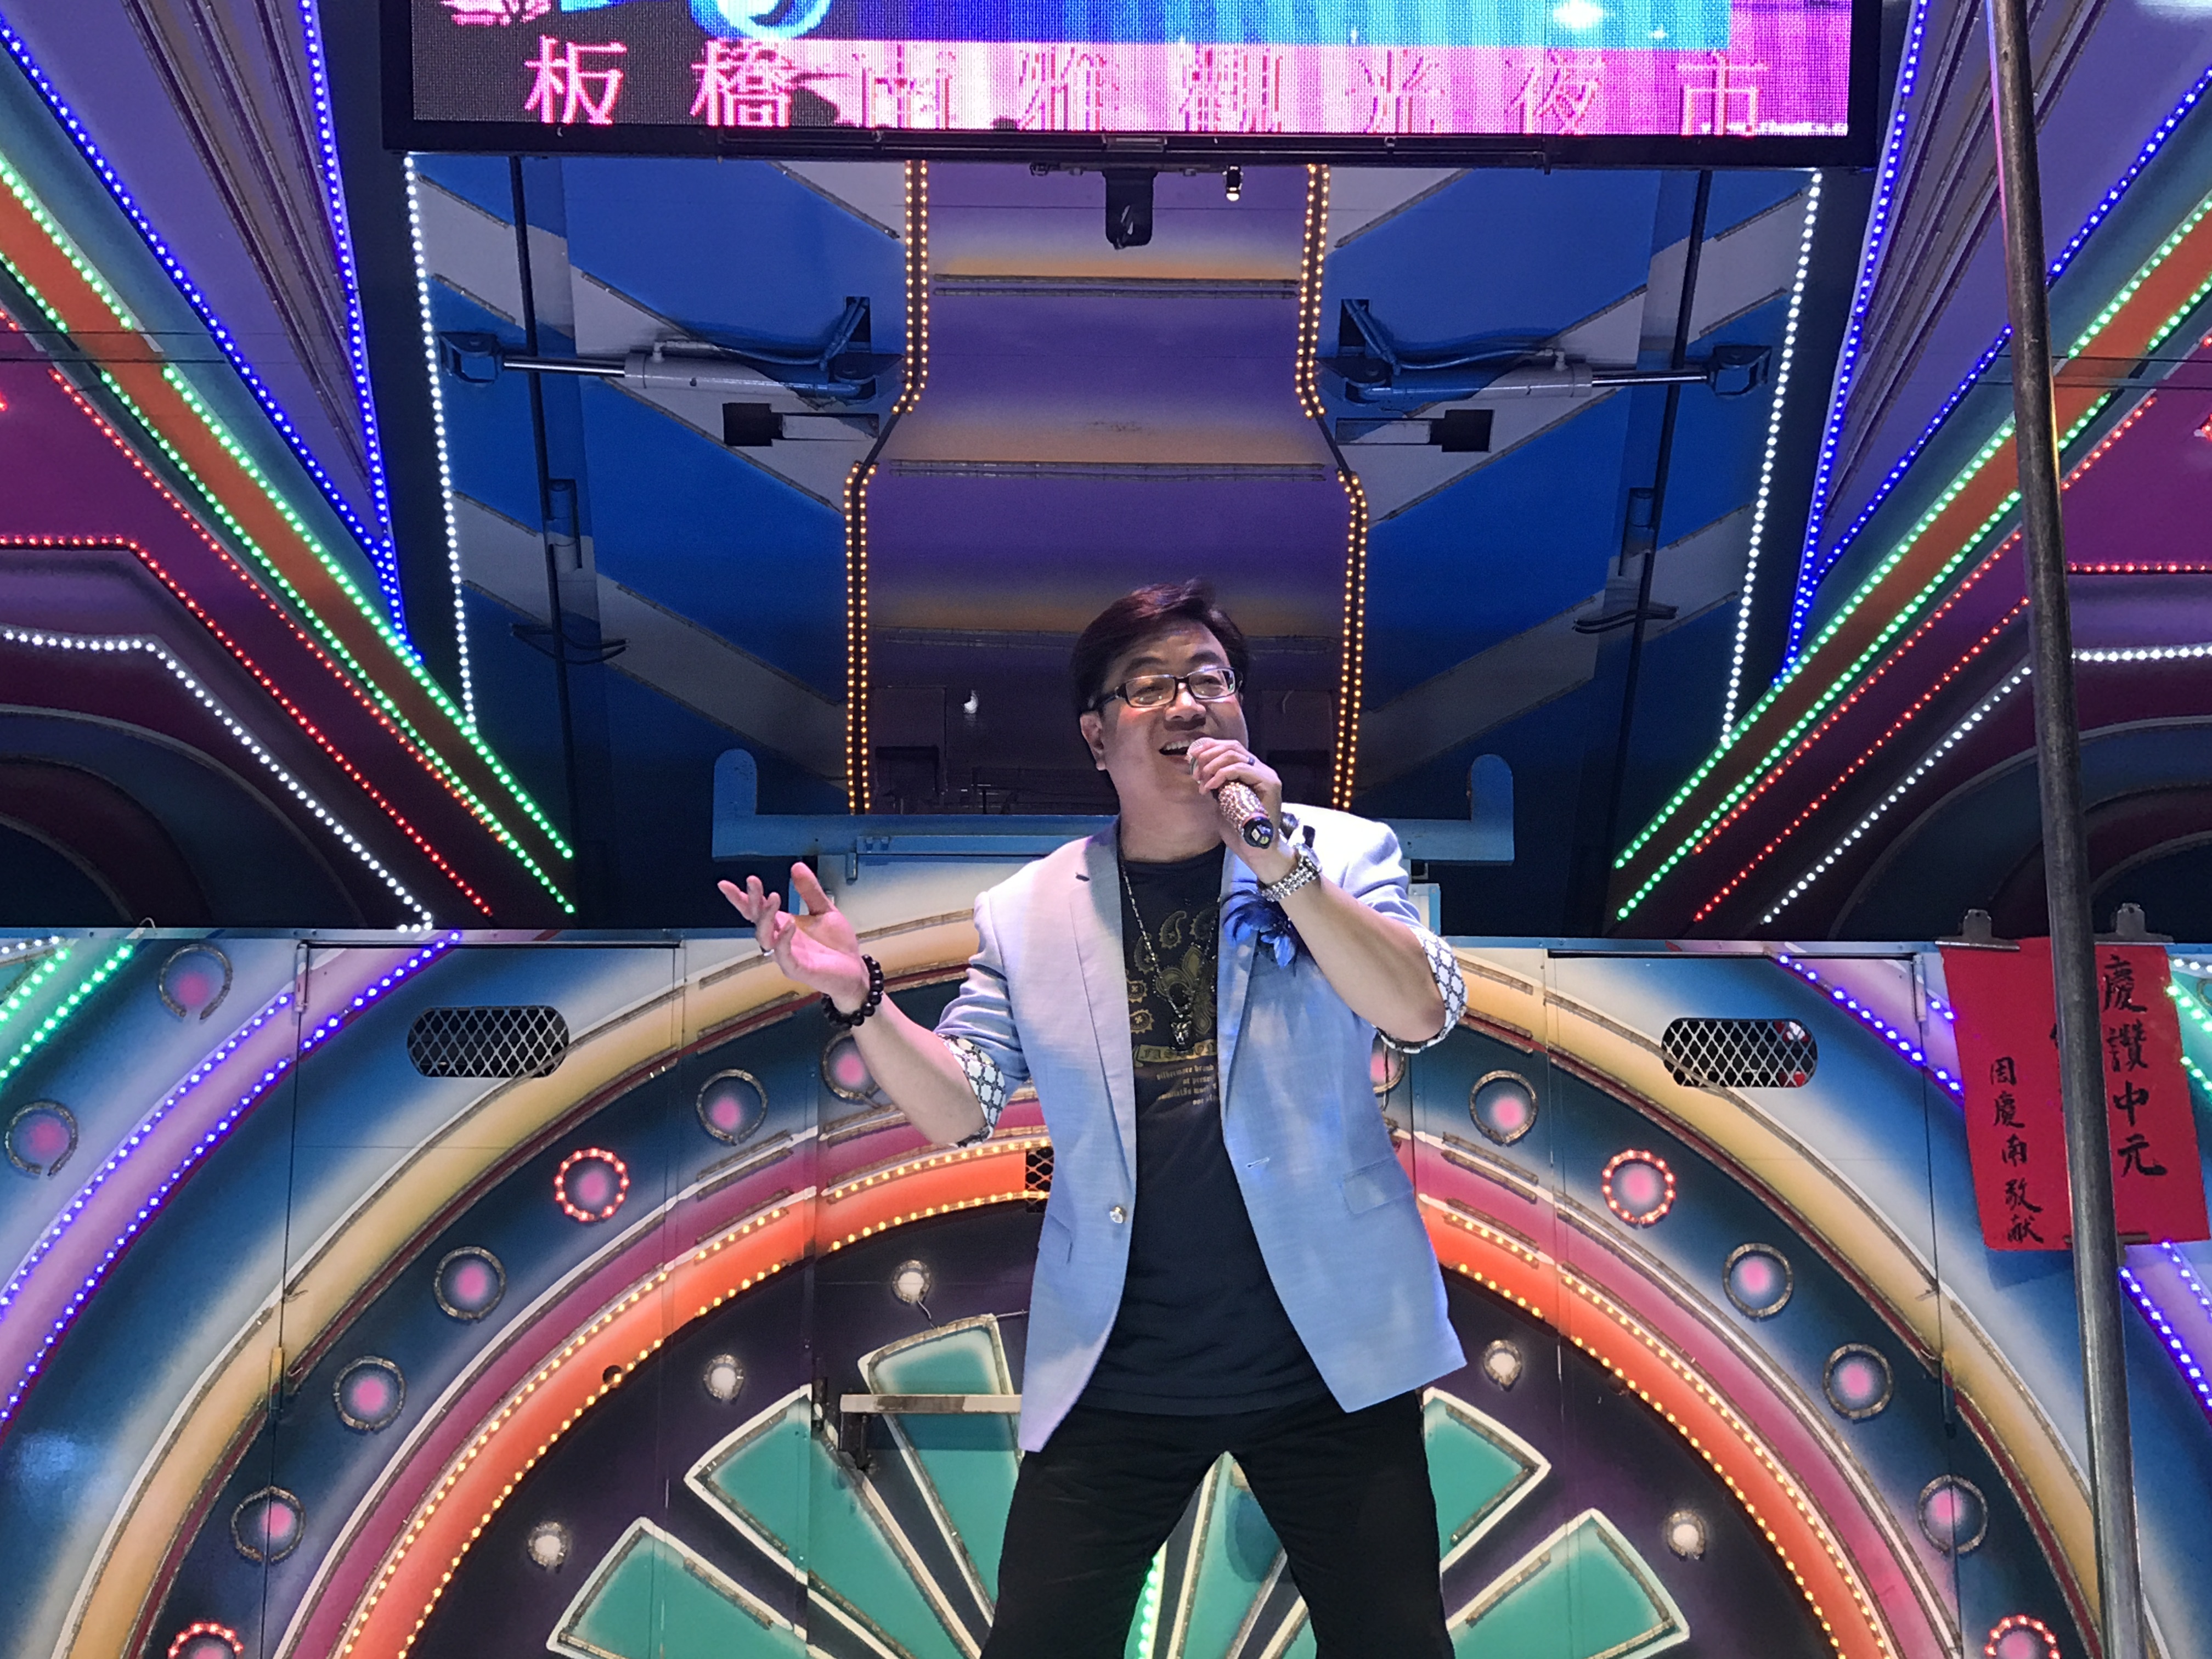 参加台湾歌手,艺人的交流演出,他为大家演唱了5首闽南语歌曲,都受到